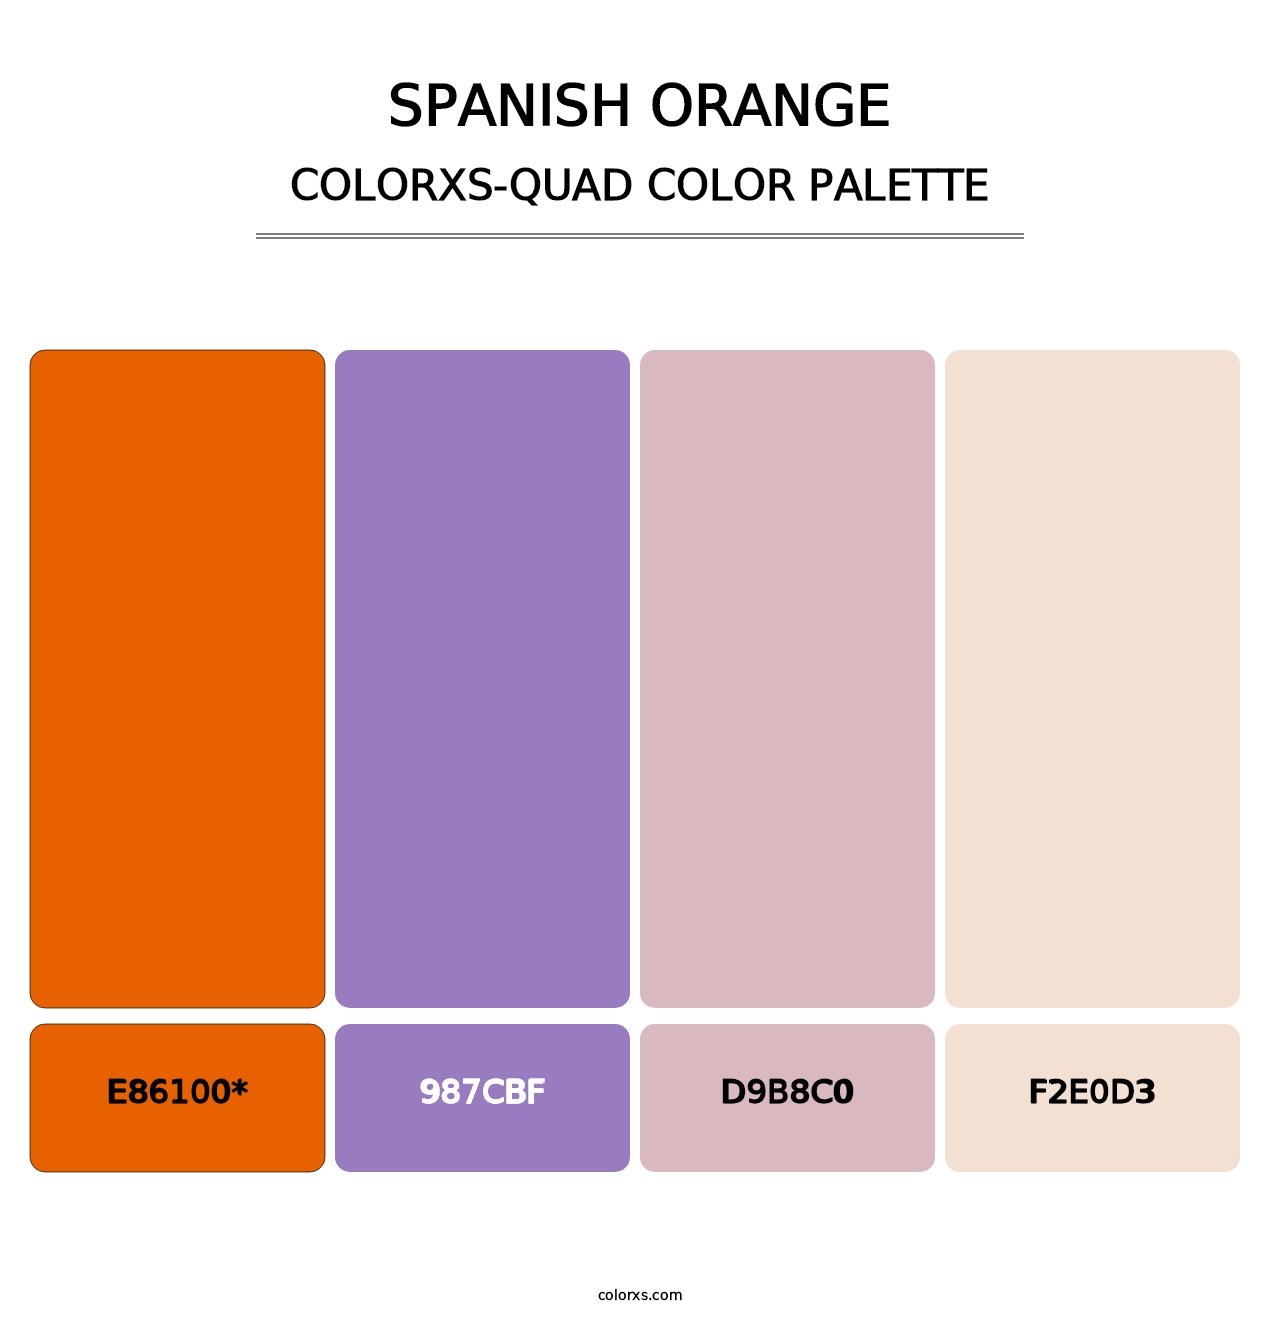 Spanish Orange - Colorxs Quad Palette